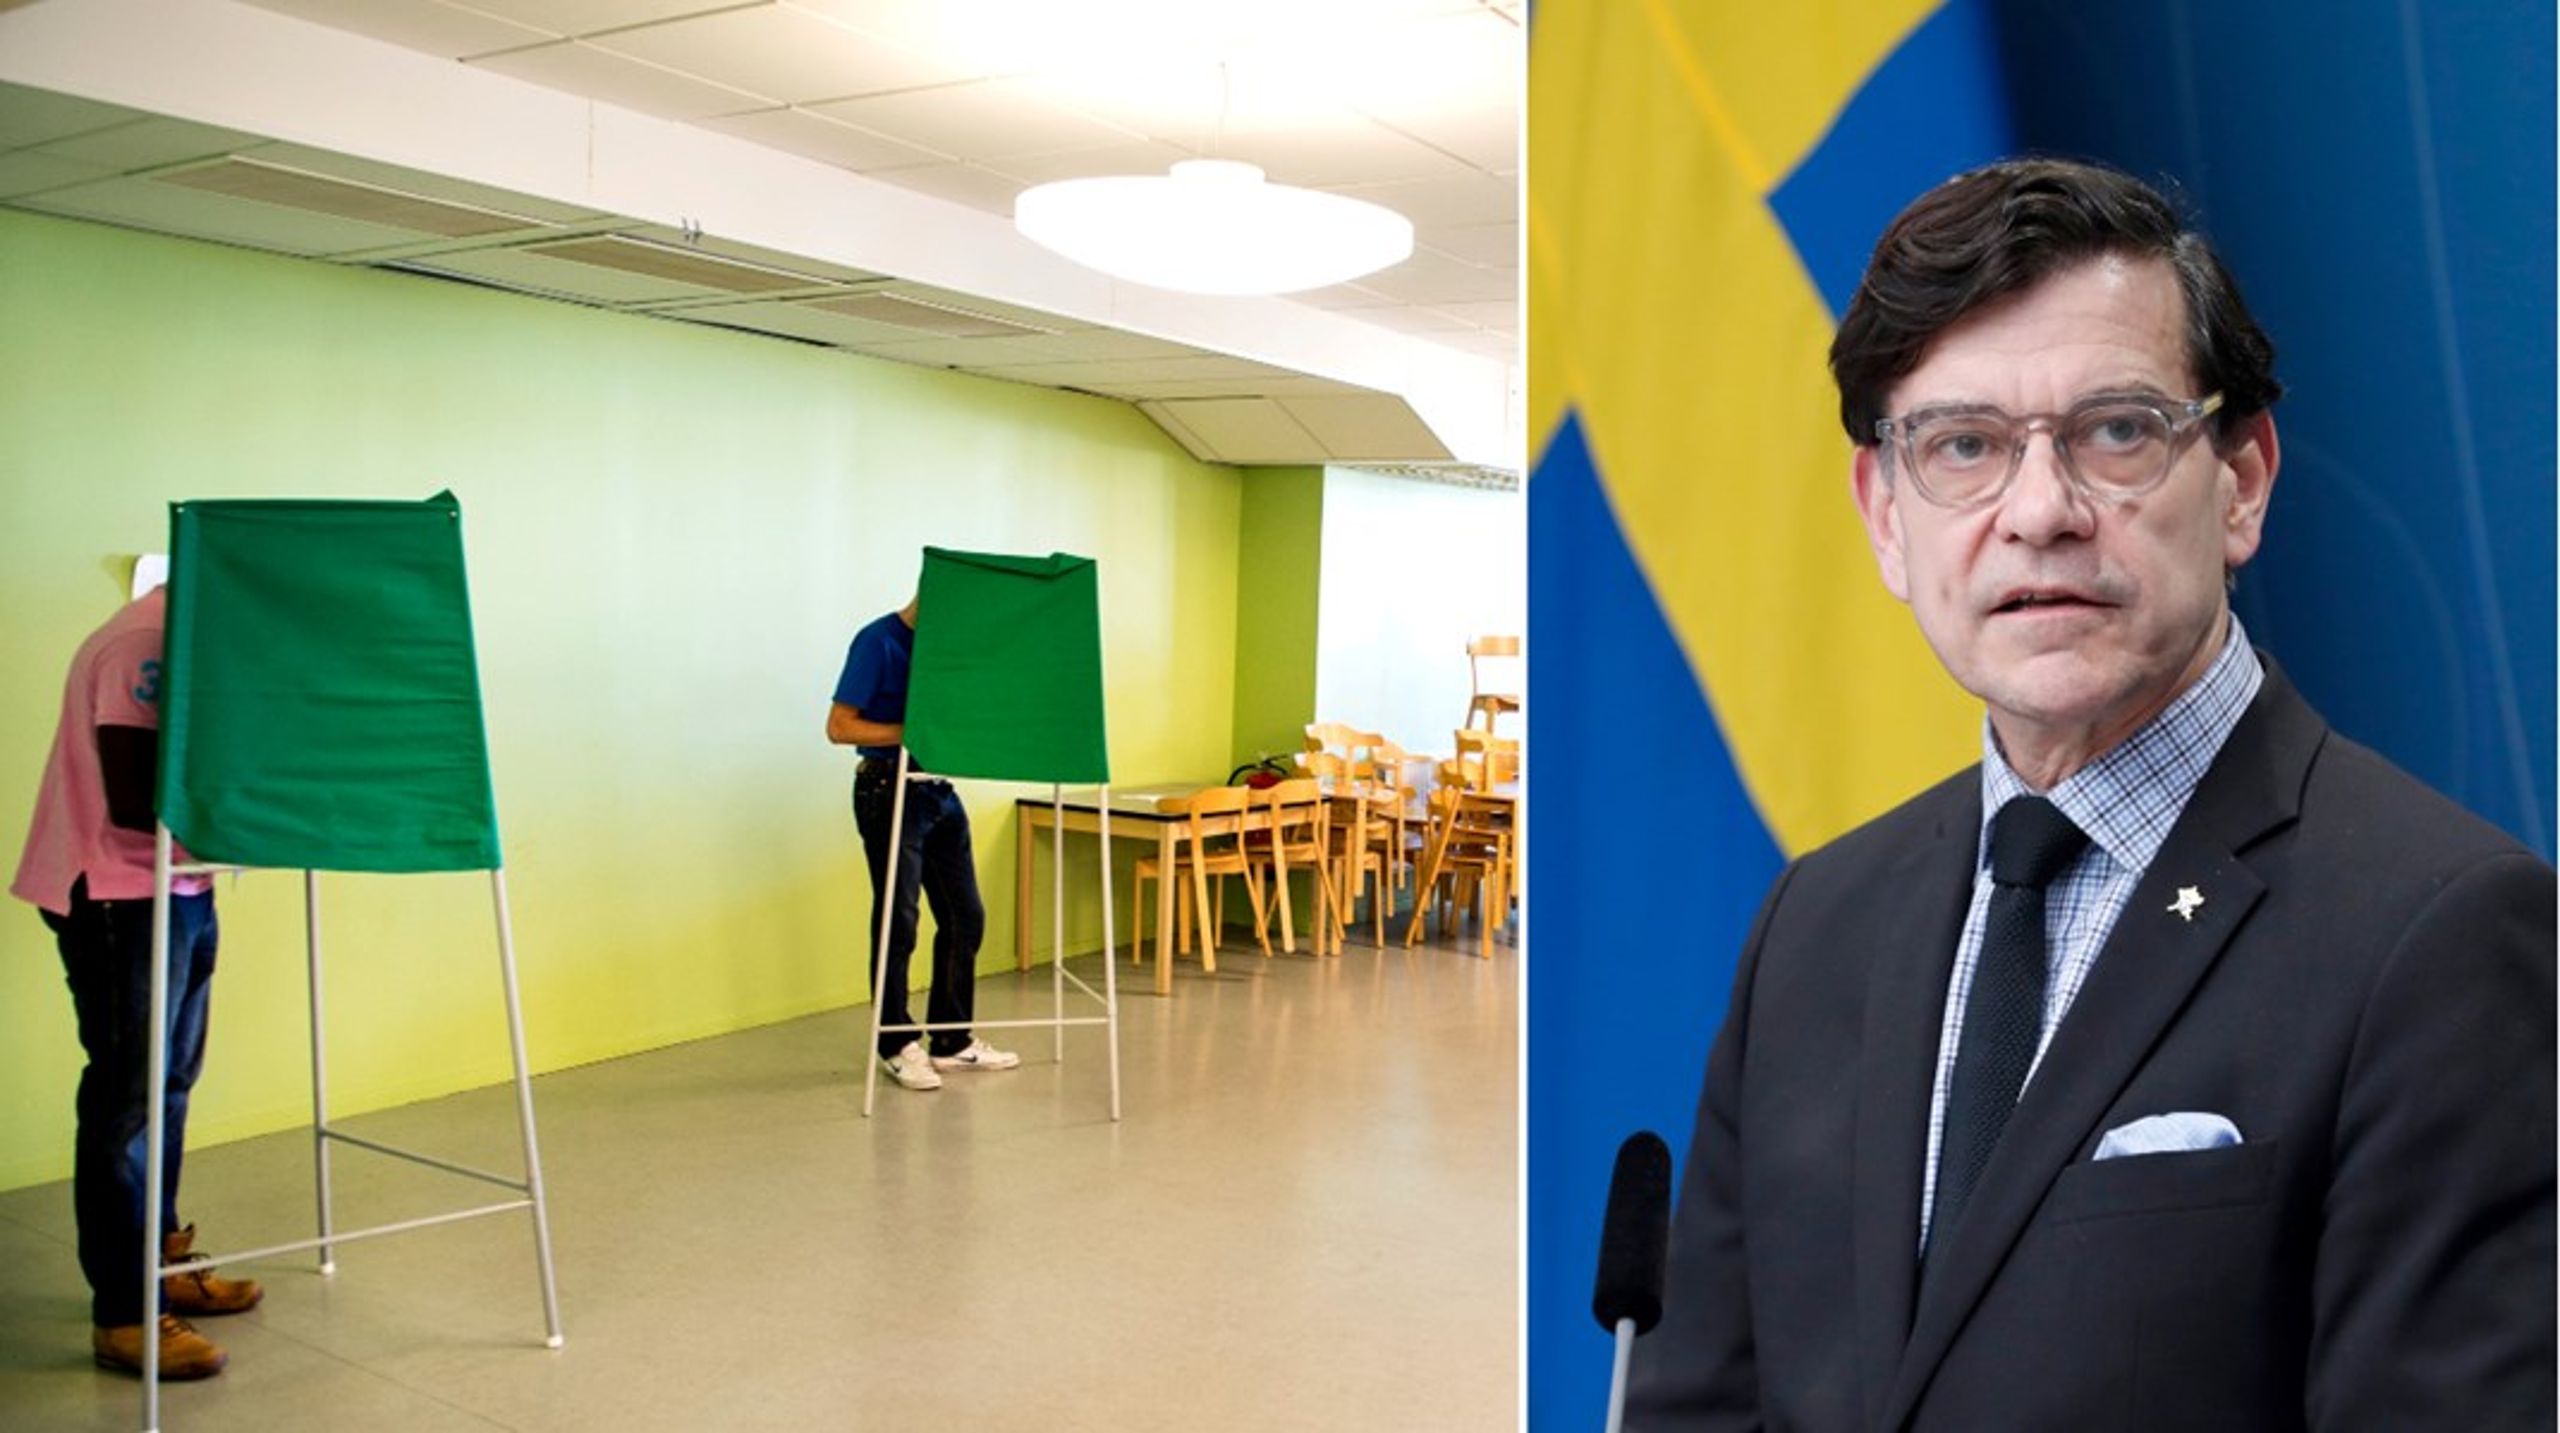 ”Svenska folket bör vara medvetna om risken för påverkan” säger Henrik Landerholm, generaldirektör för Myndigheten för psykologiskt försvar som innan valet ska rulla ut en kampanj för att stärka&nbsp;allmänhetens förmåga att stå emot desinformation.